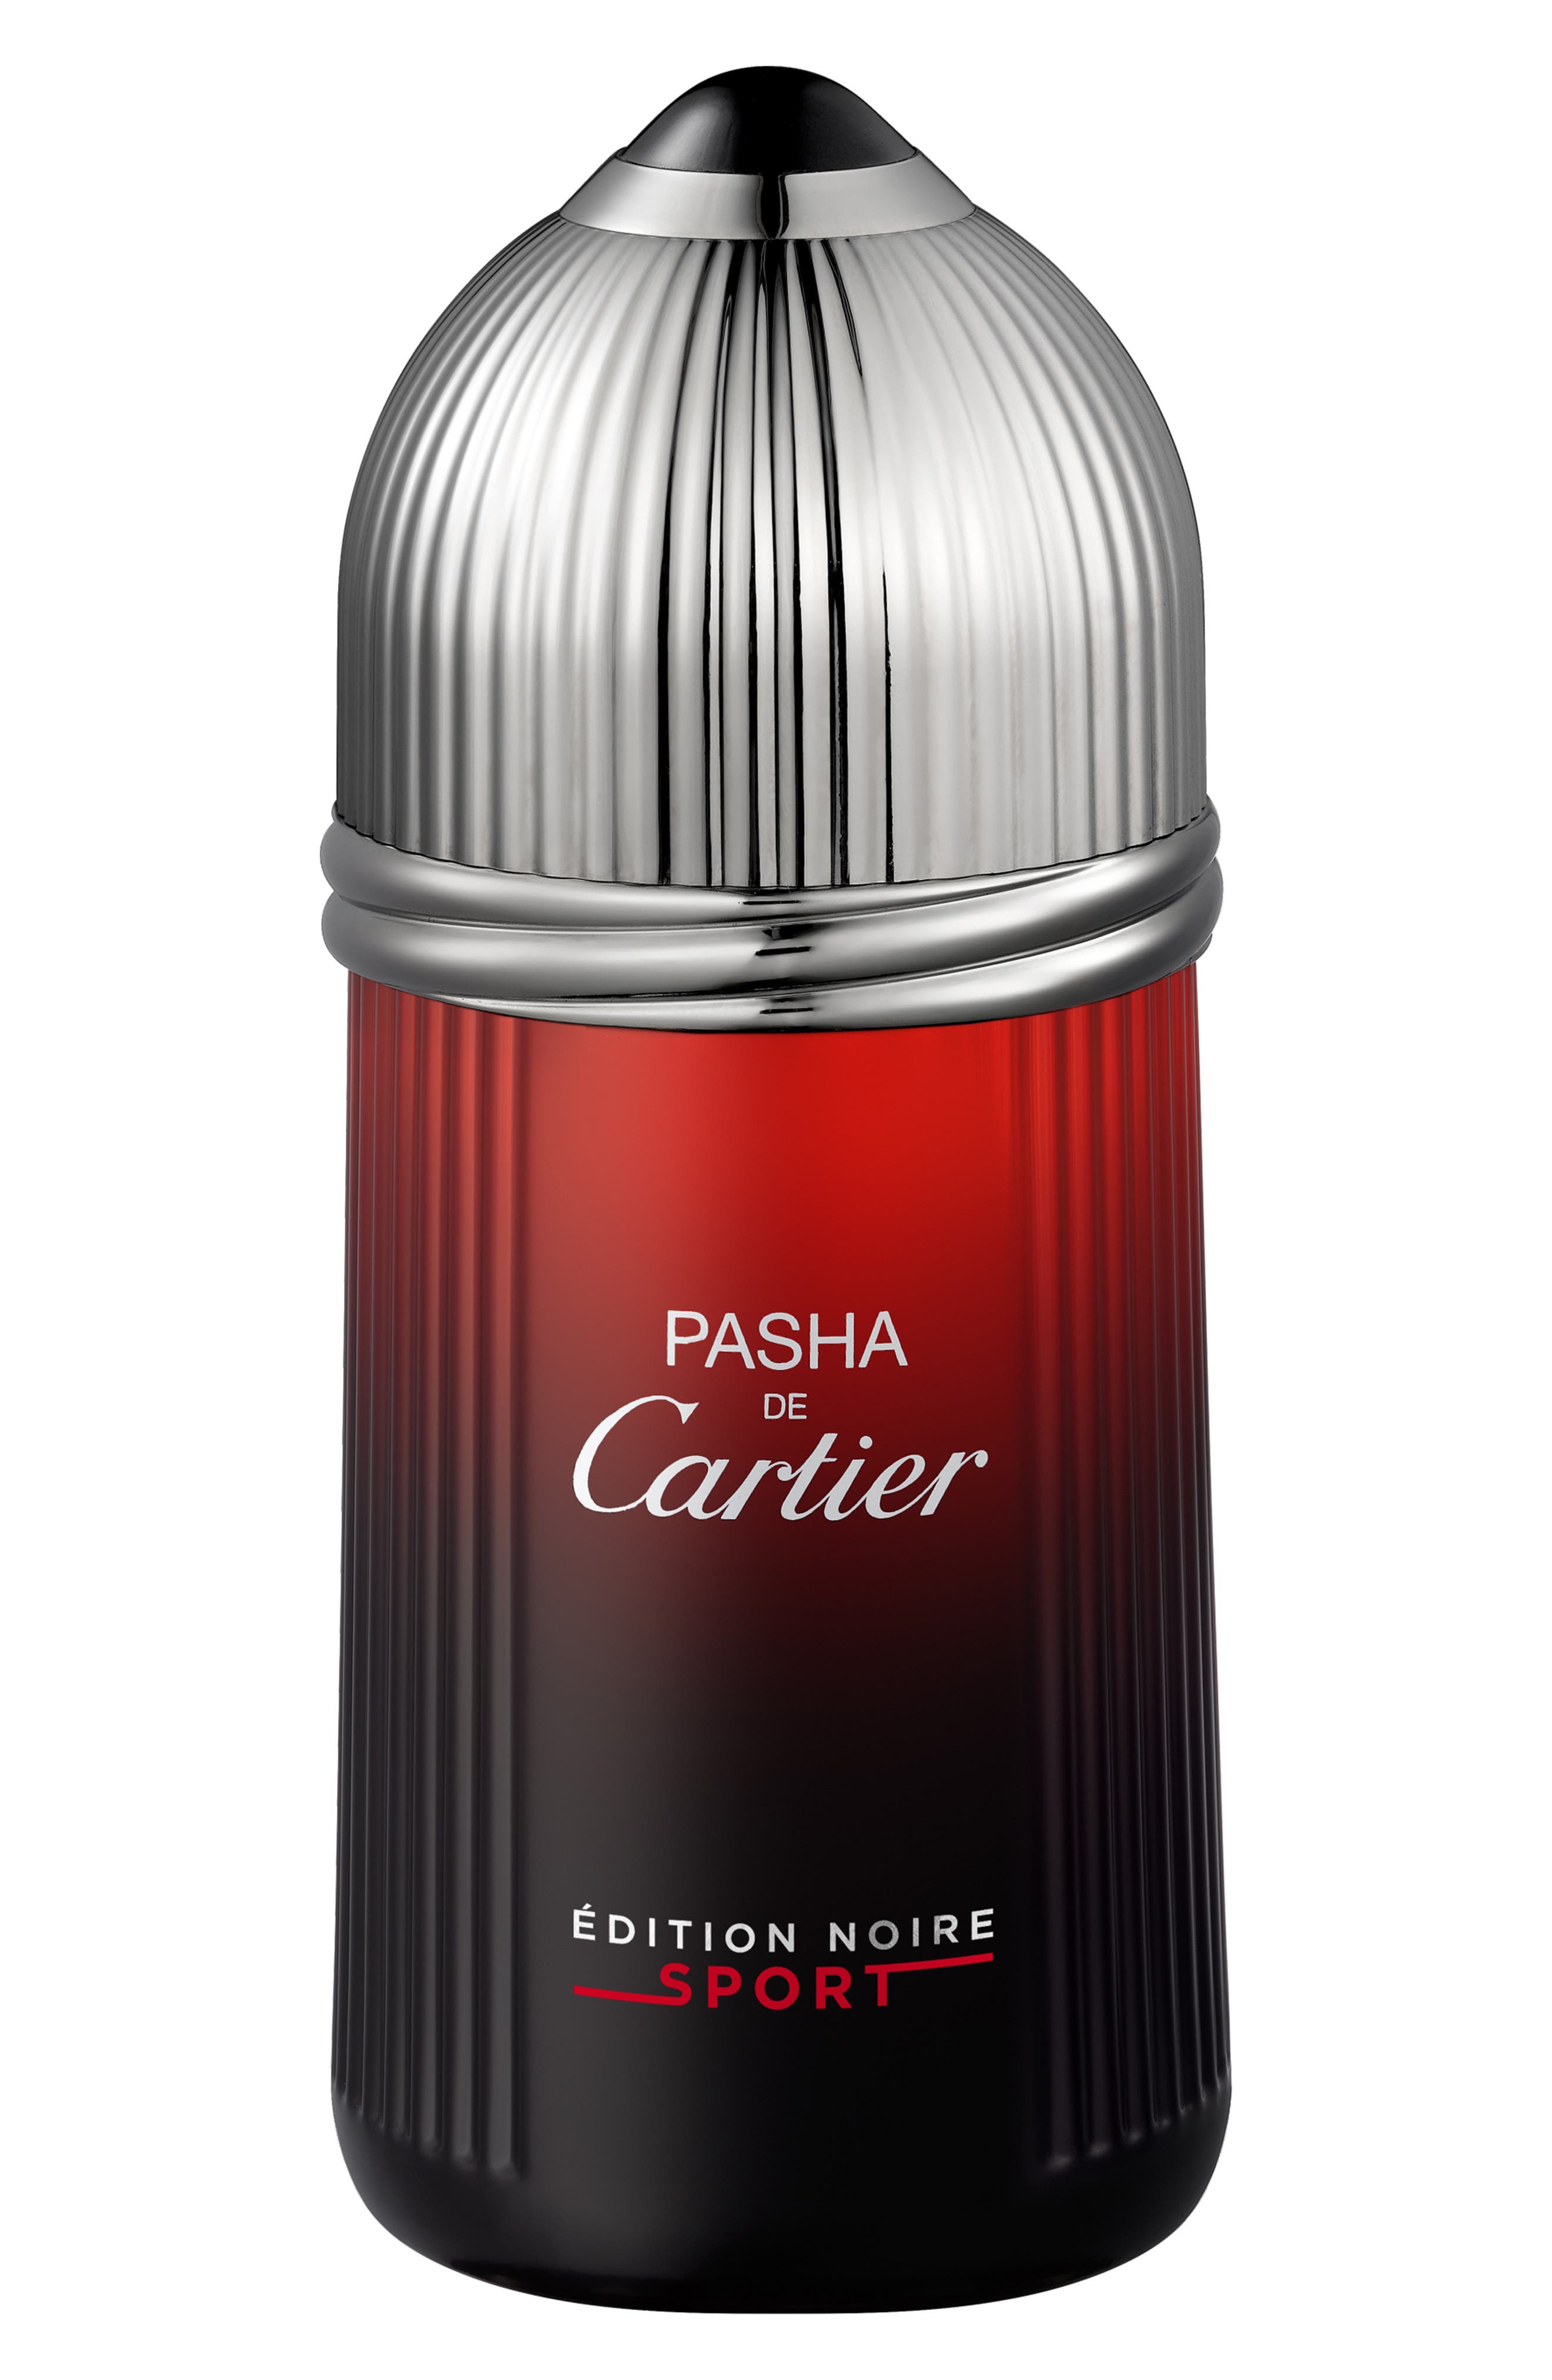 Cartier Pasha Edition Noire Sport Eau de Toilette at Nordstrom, Size 3.3 Oz